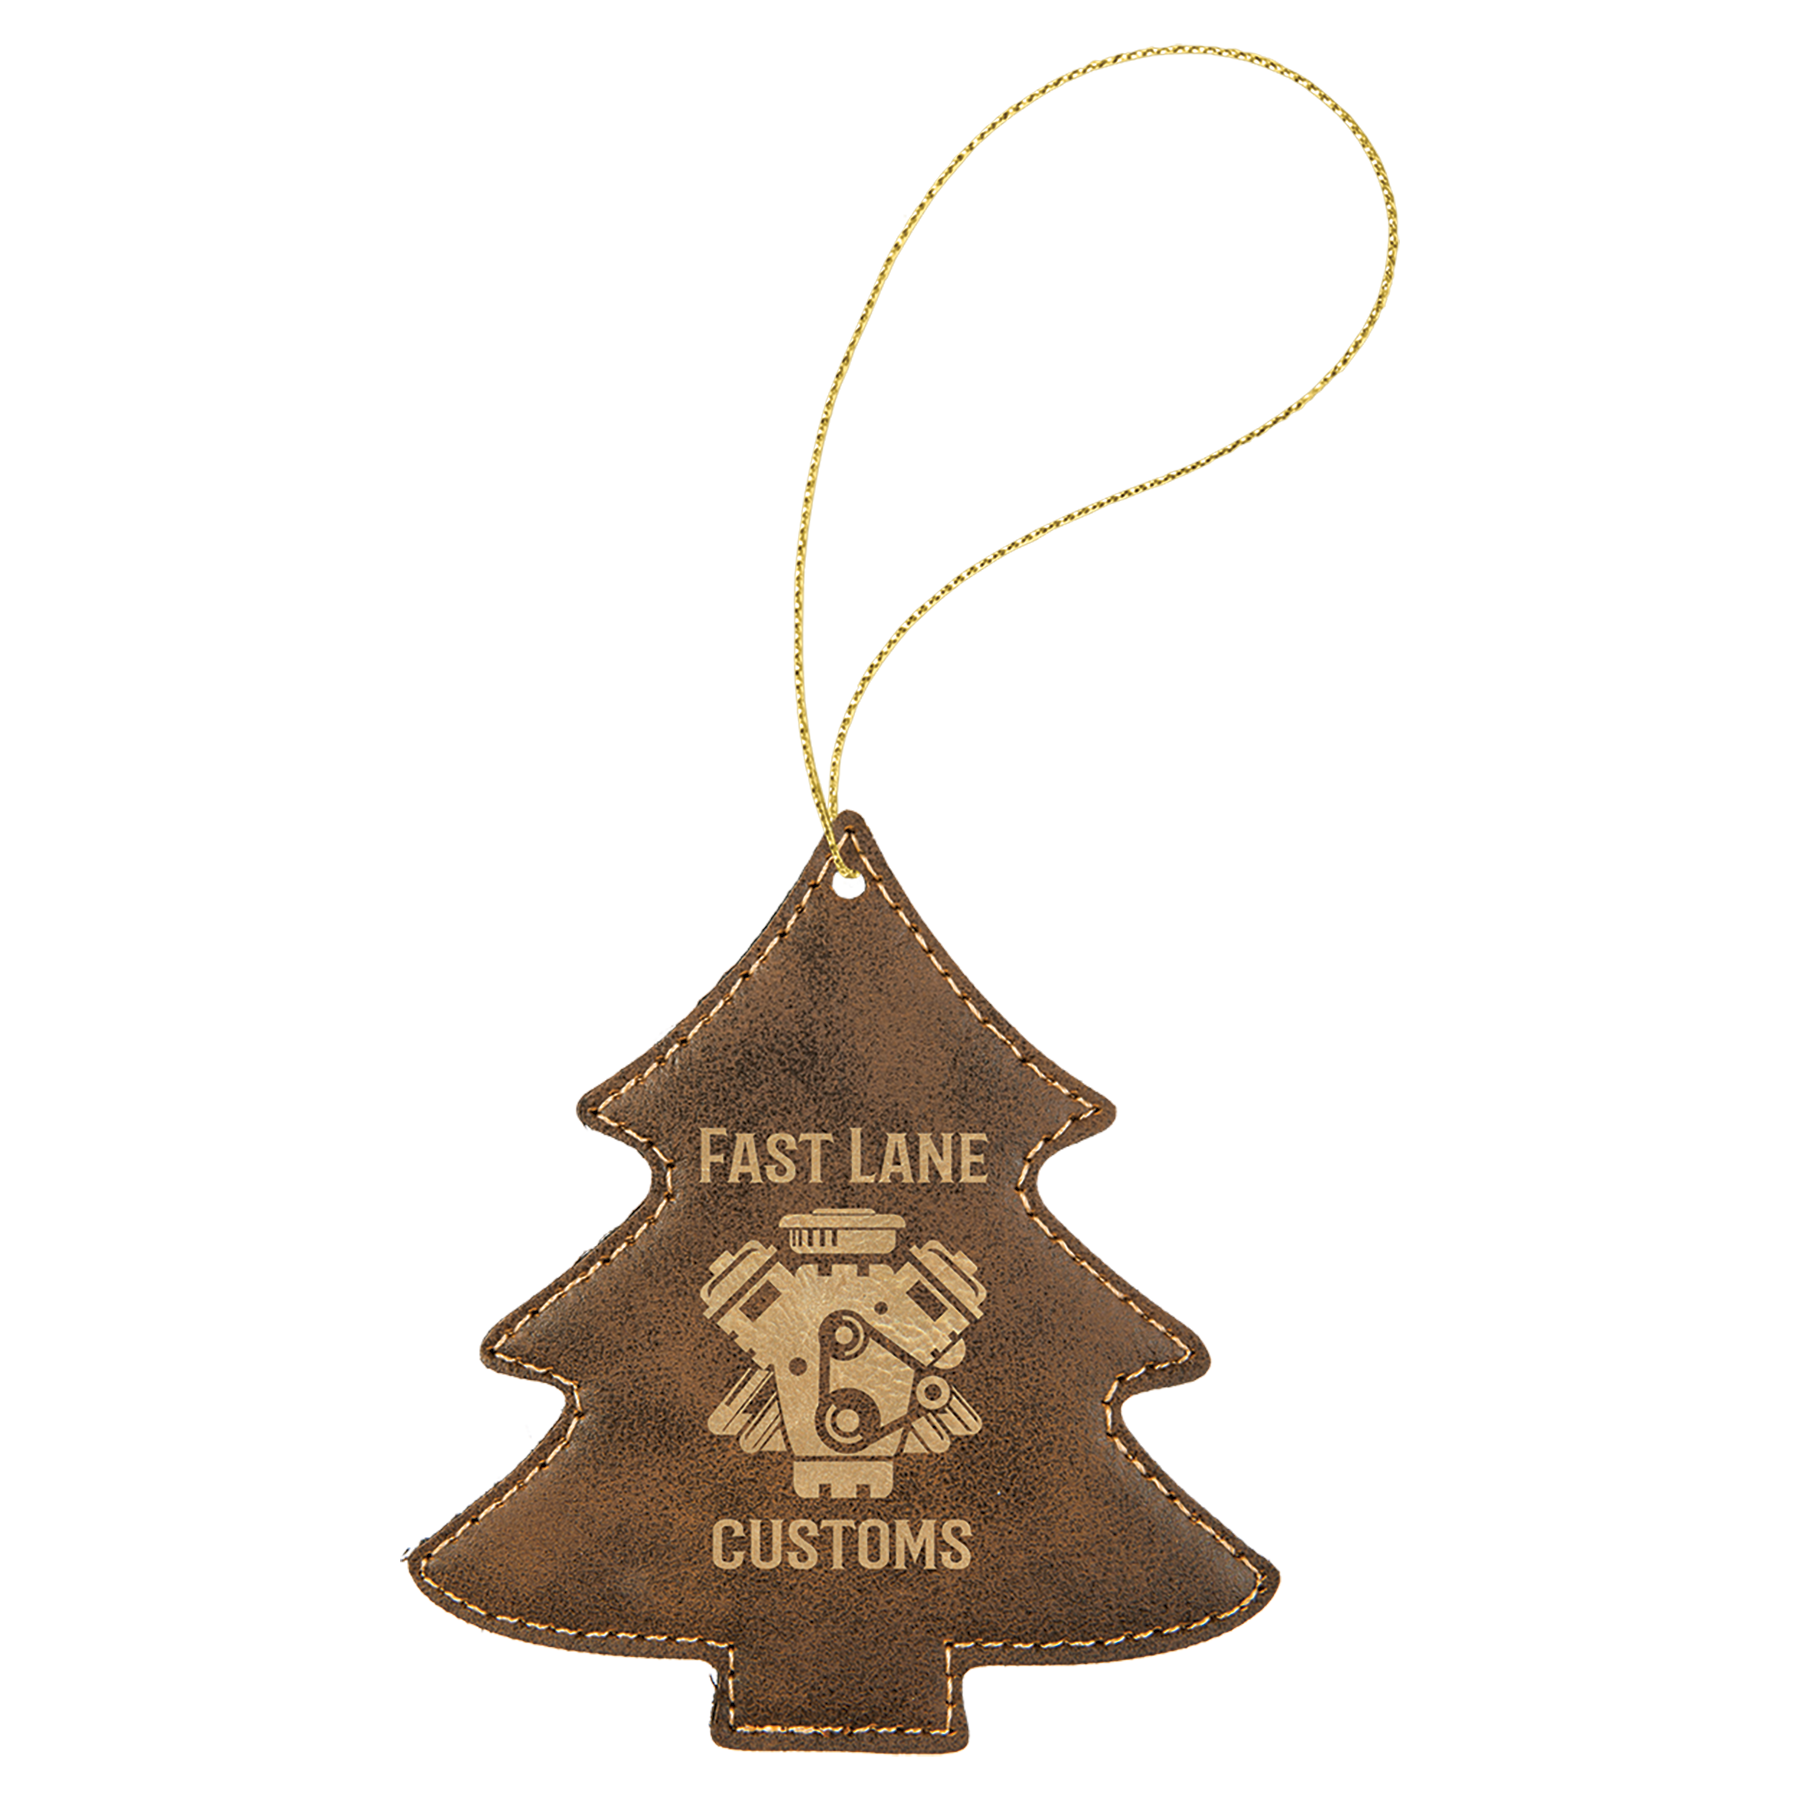 Leatherette Tree Ornament